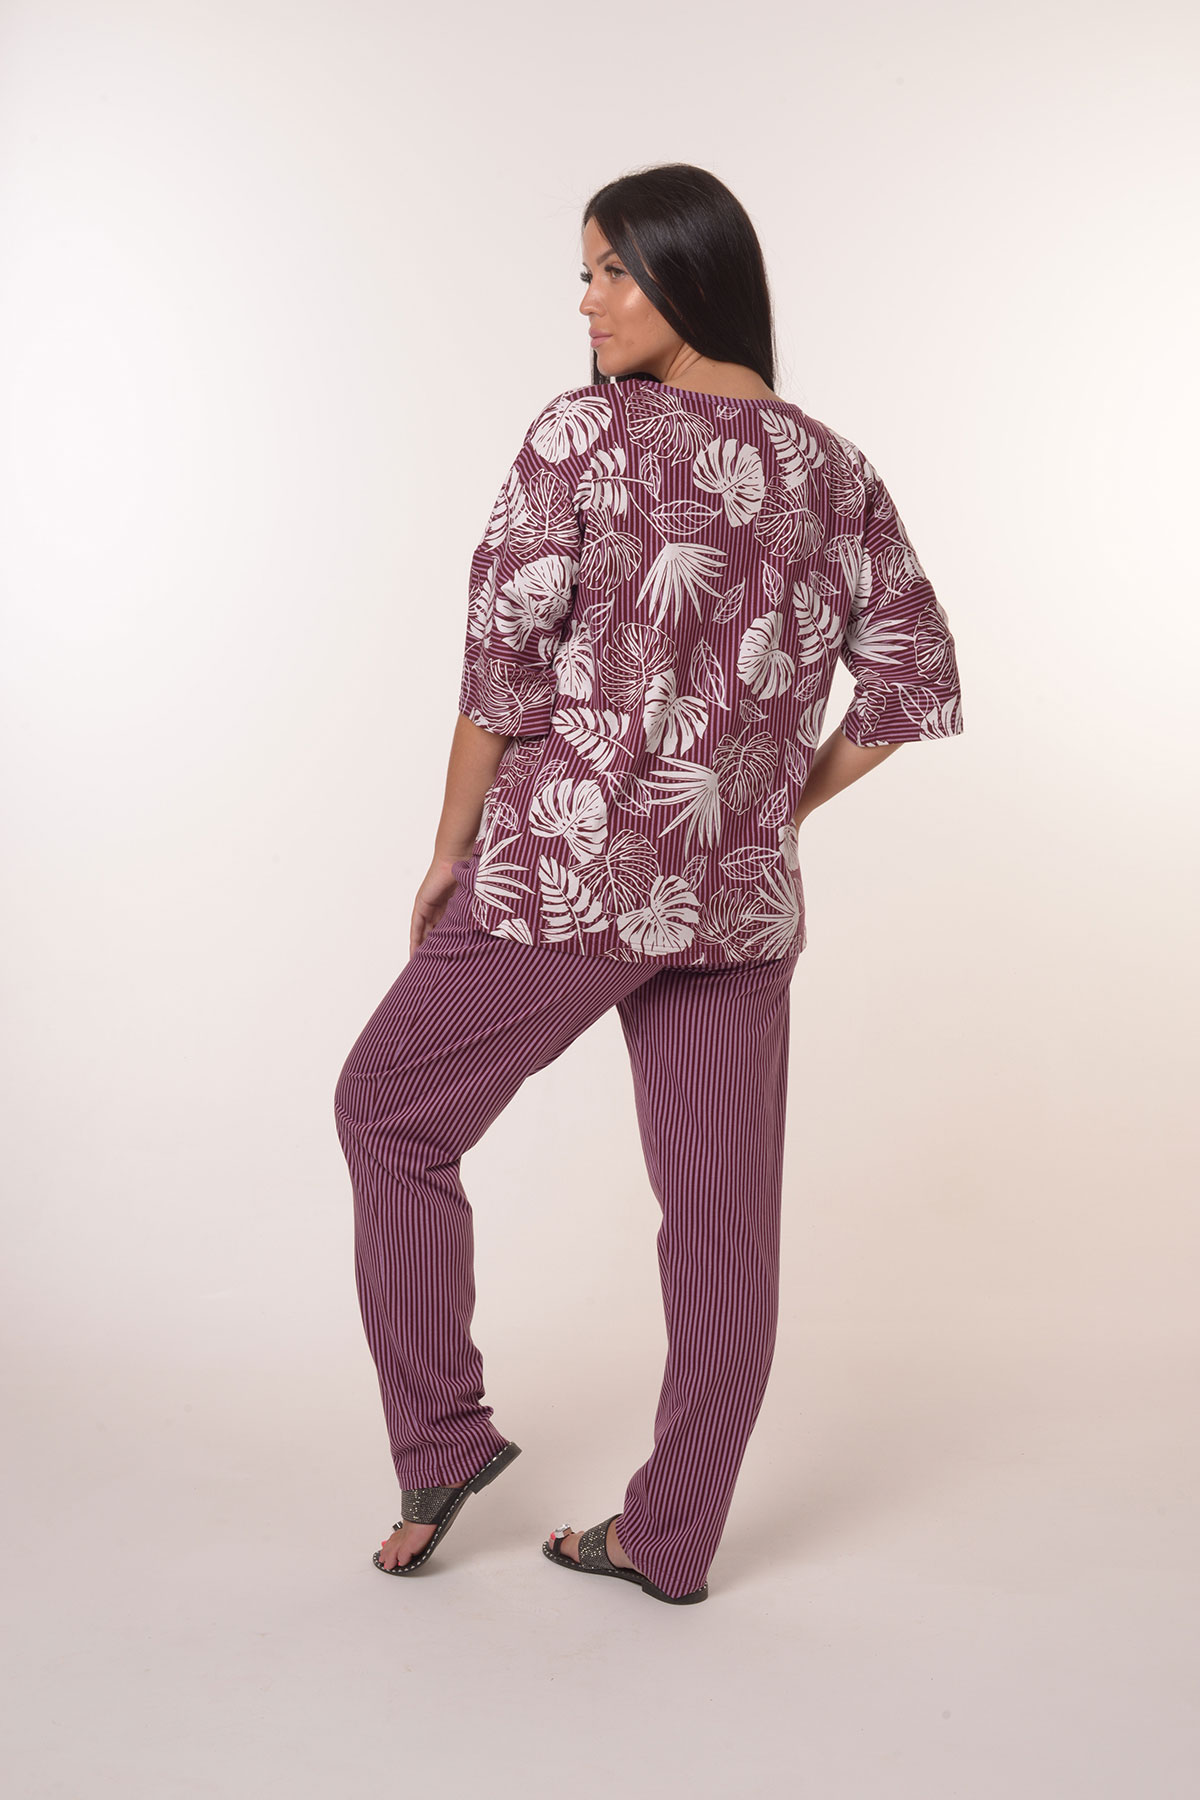 Жен. костюм повседневный арт. 23-0390 Фиолетовый р. 68 Моделлини, размер 68 - фото 4